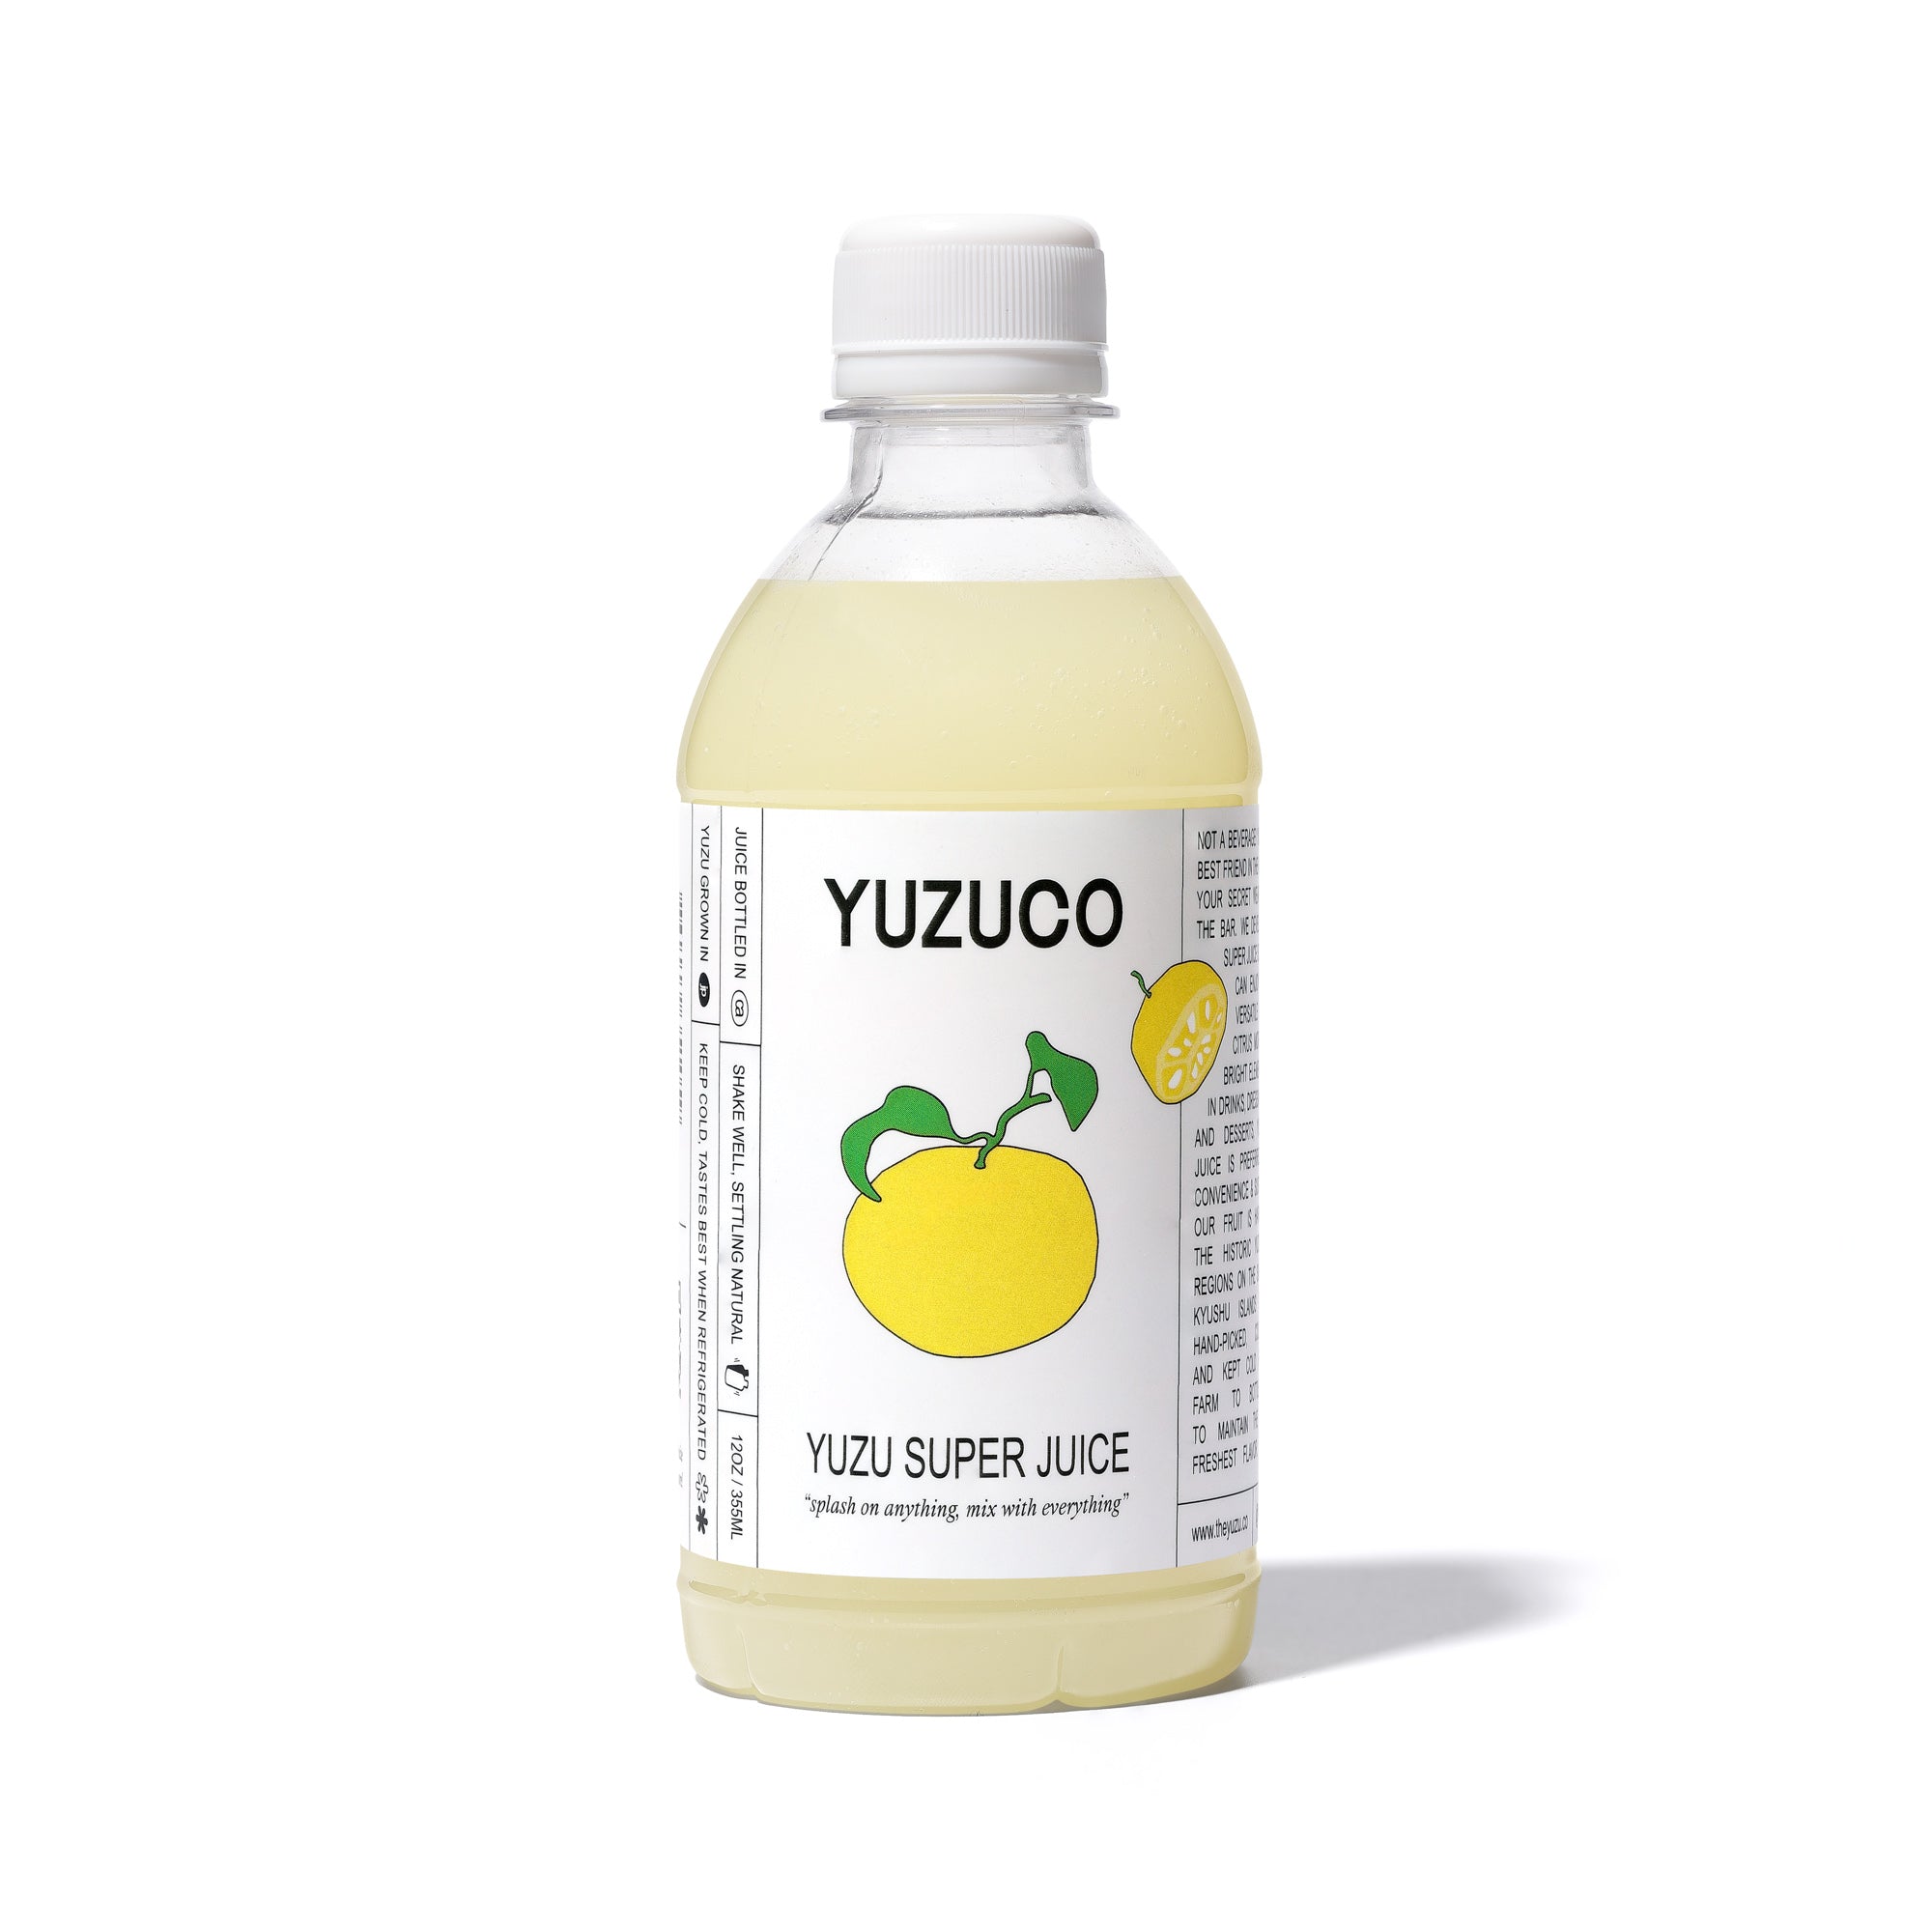 Buy Premium Japanese Yuzu Citrus Online